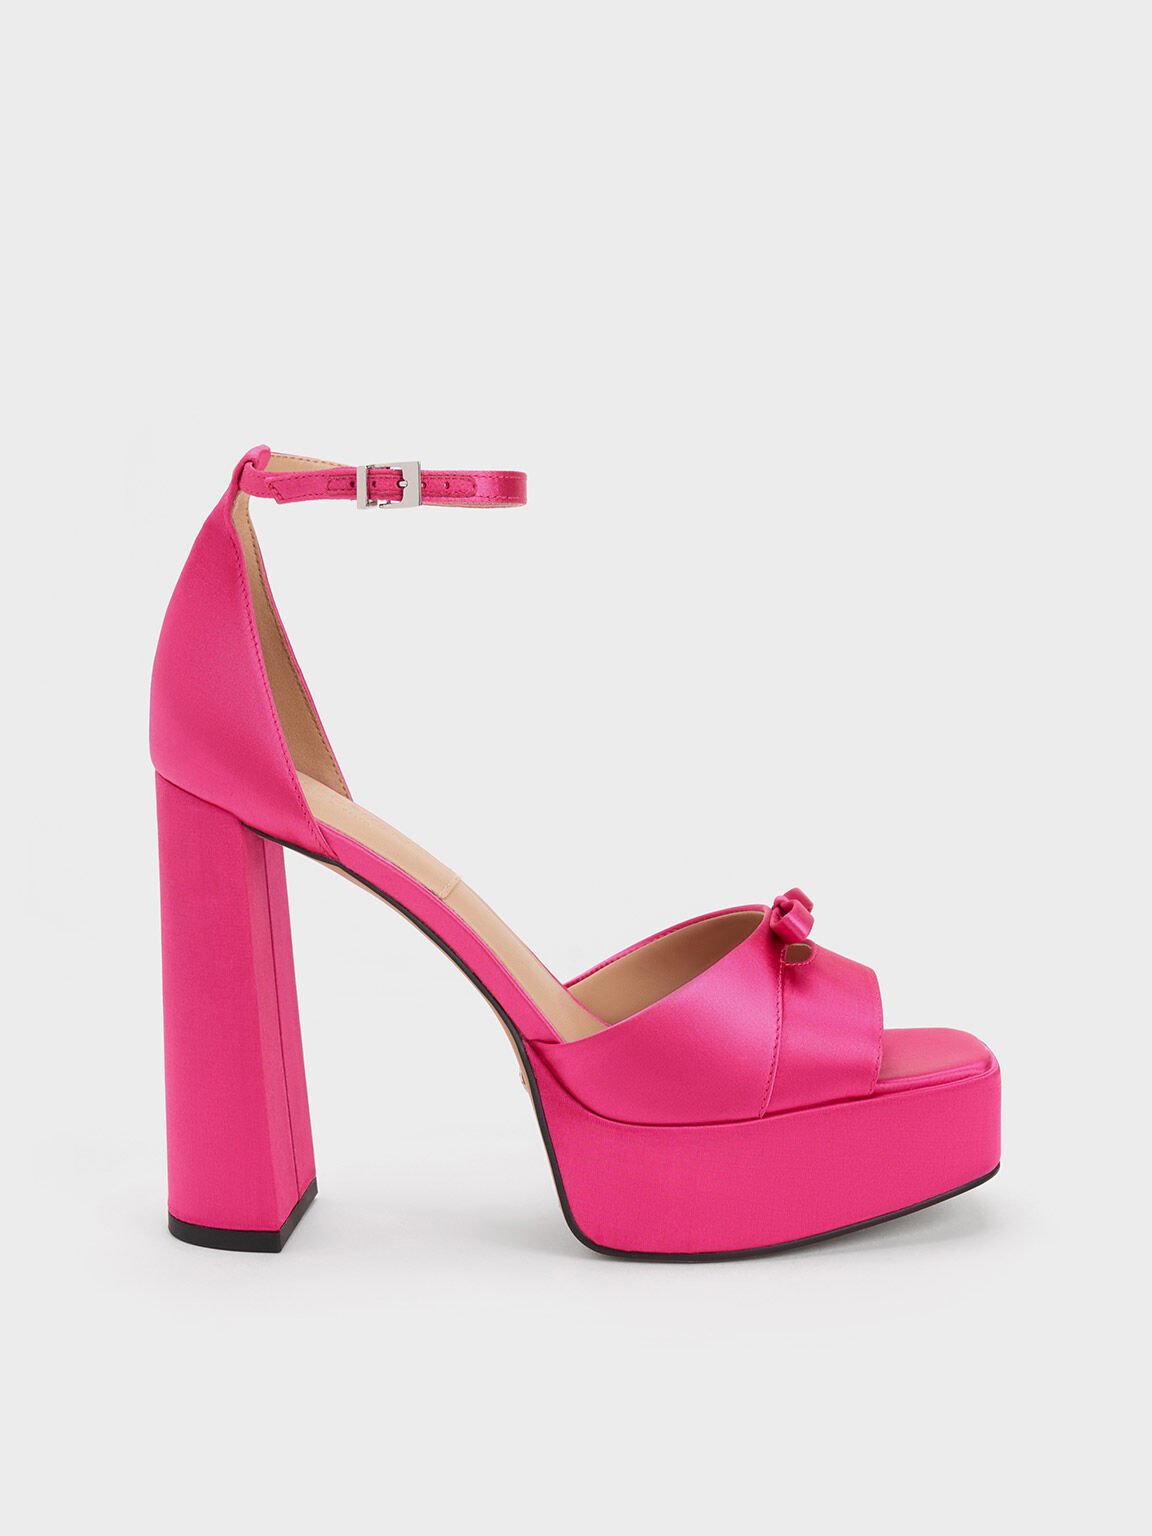 Verona 環保材質粗跟高跟鞋, 粉紅色, hi-res